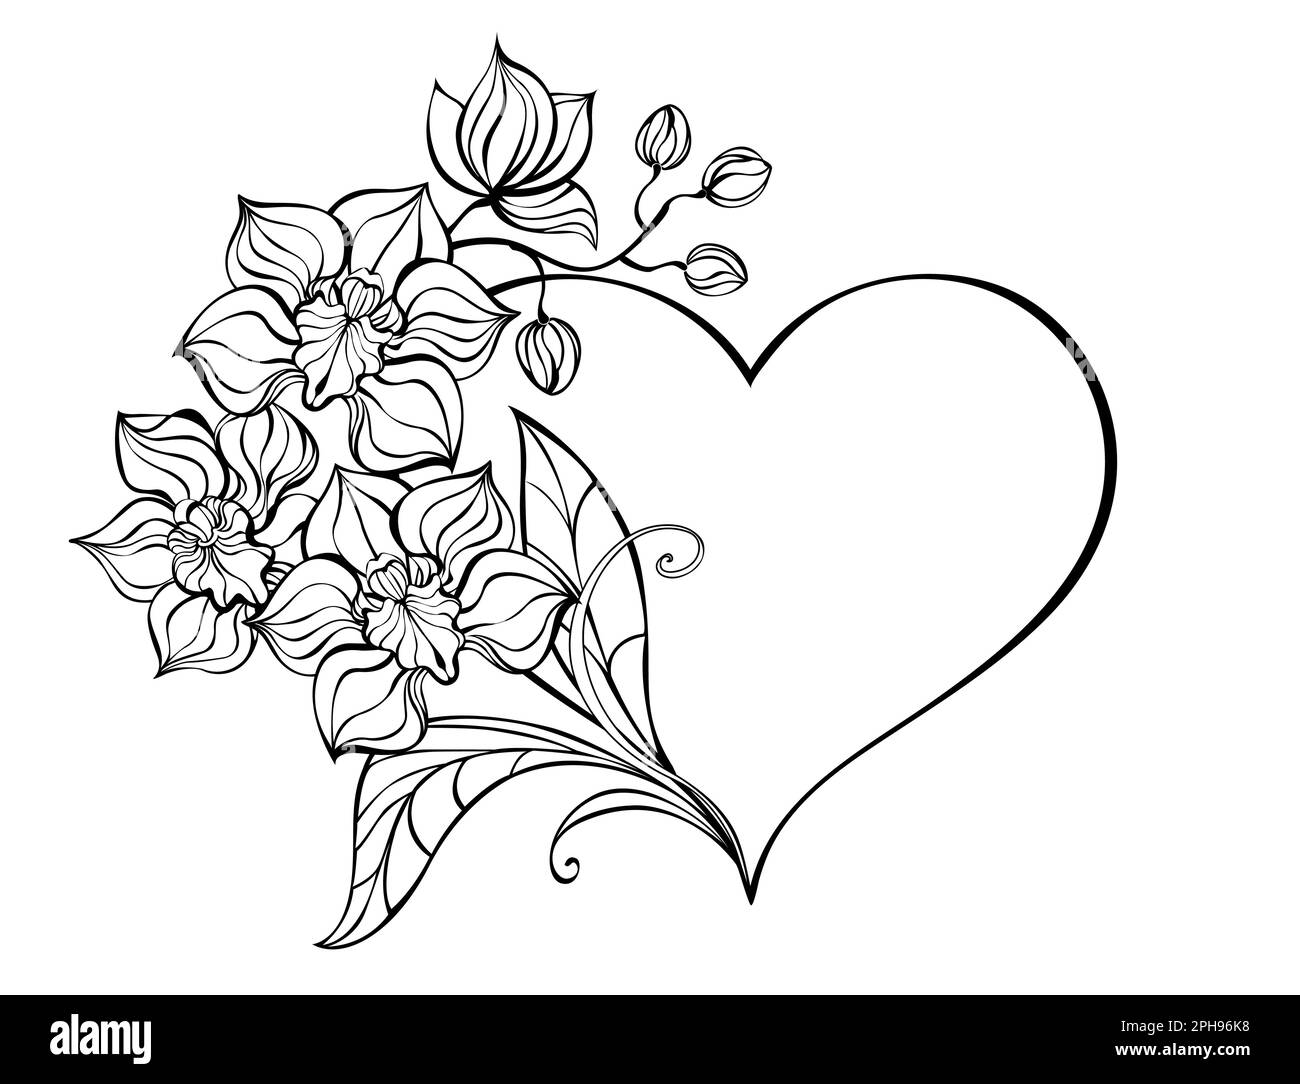 Cornice a forma di cuore, decorata con contorno, ramo artisticamente disegnato di un'orchidea su sfondo bianco. Colorazione. Disegno artistico di un'orca Illustrazione Vettoriale